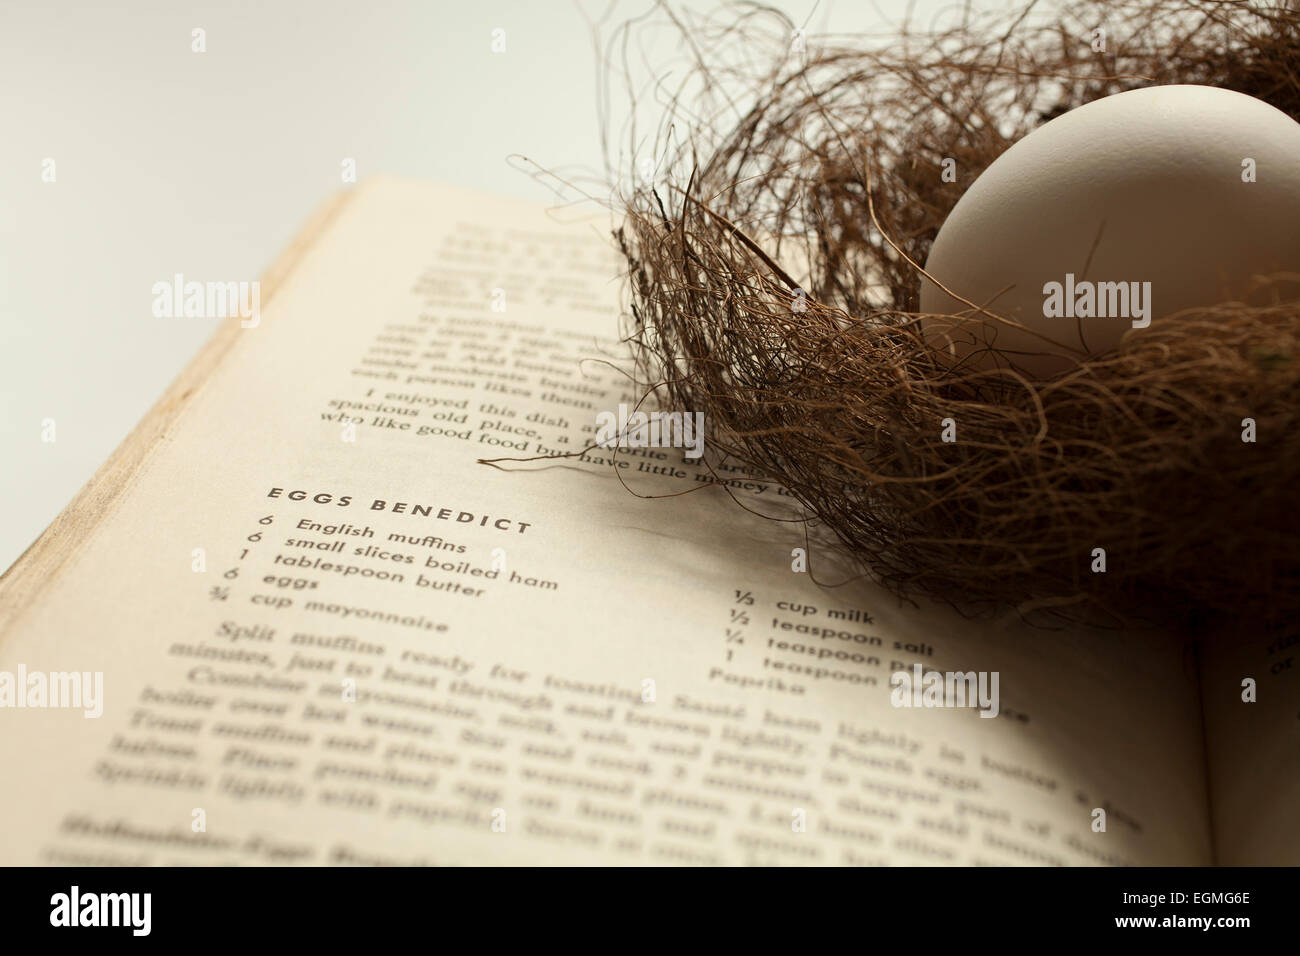 Ein Ei in eine zarte Vogelnest ruht auf einem Kochbuch ein Rezept für Rührei eröffnet. Stockfoto